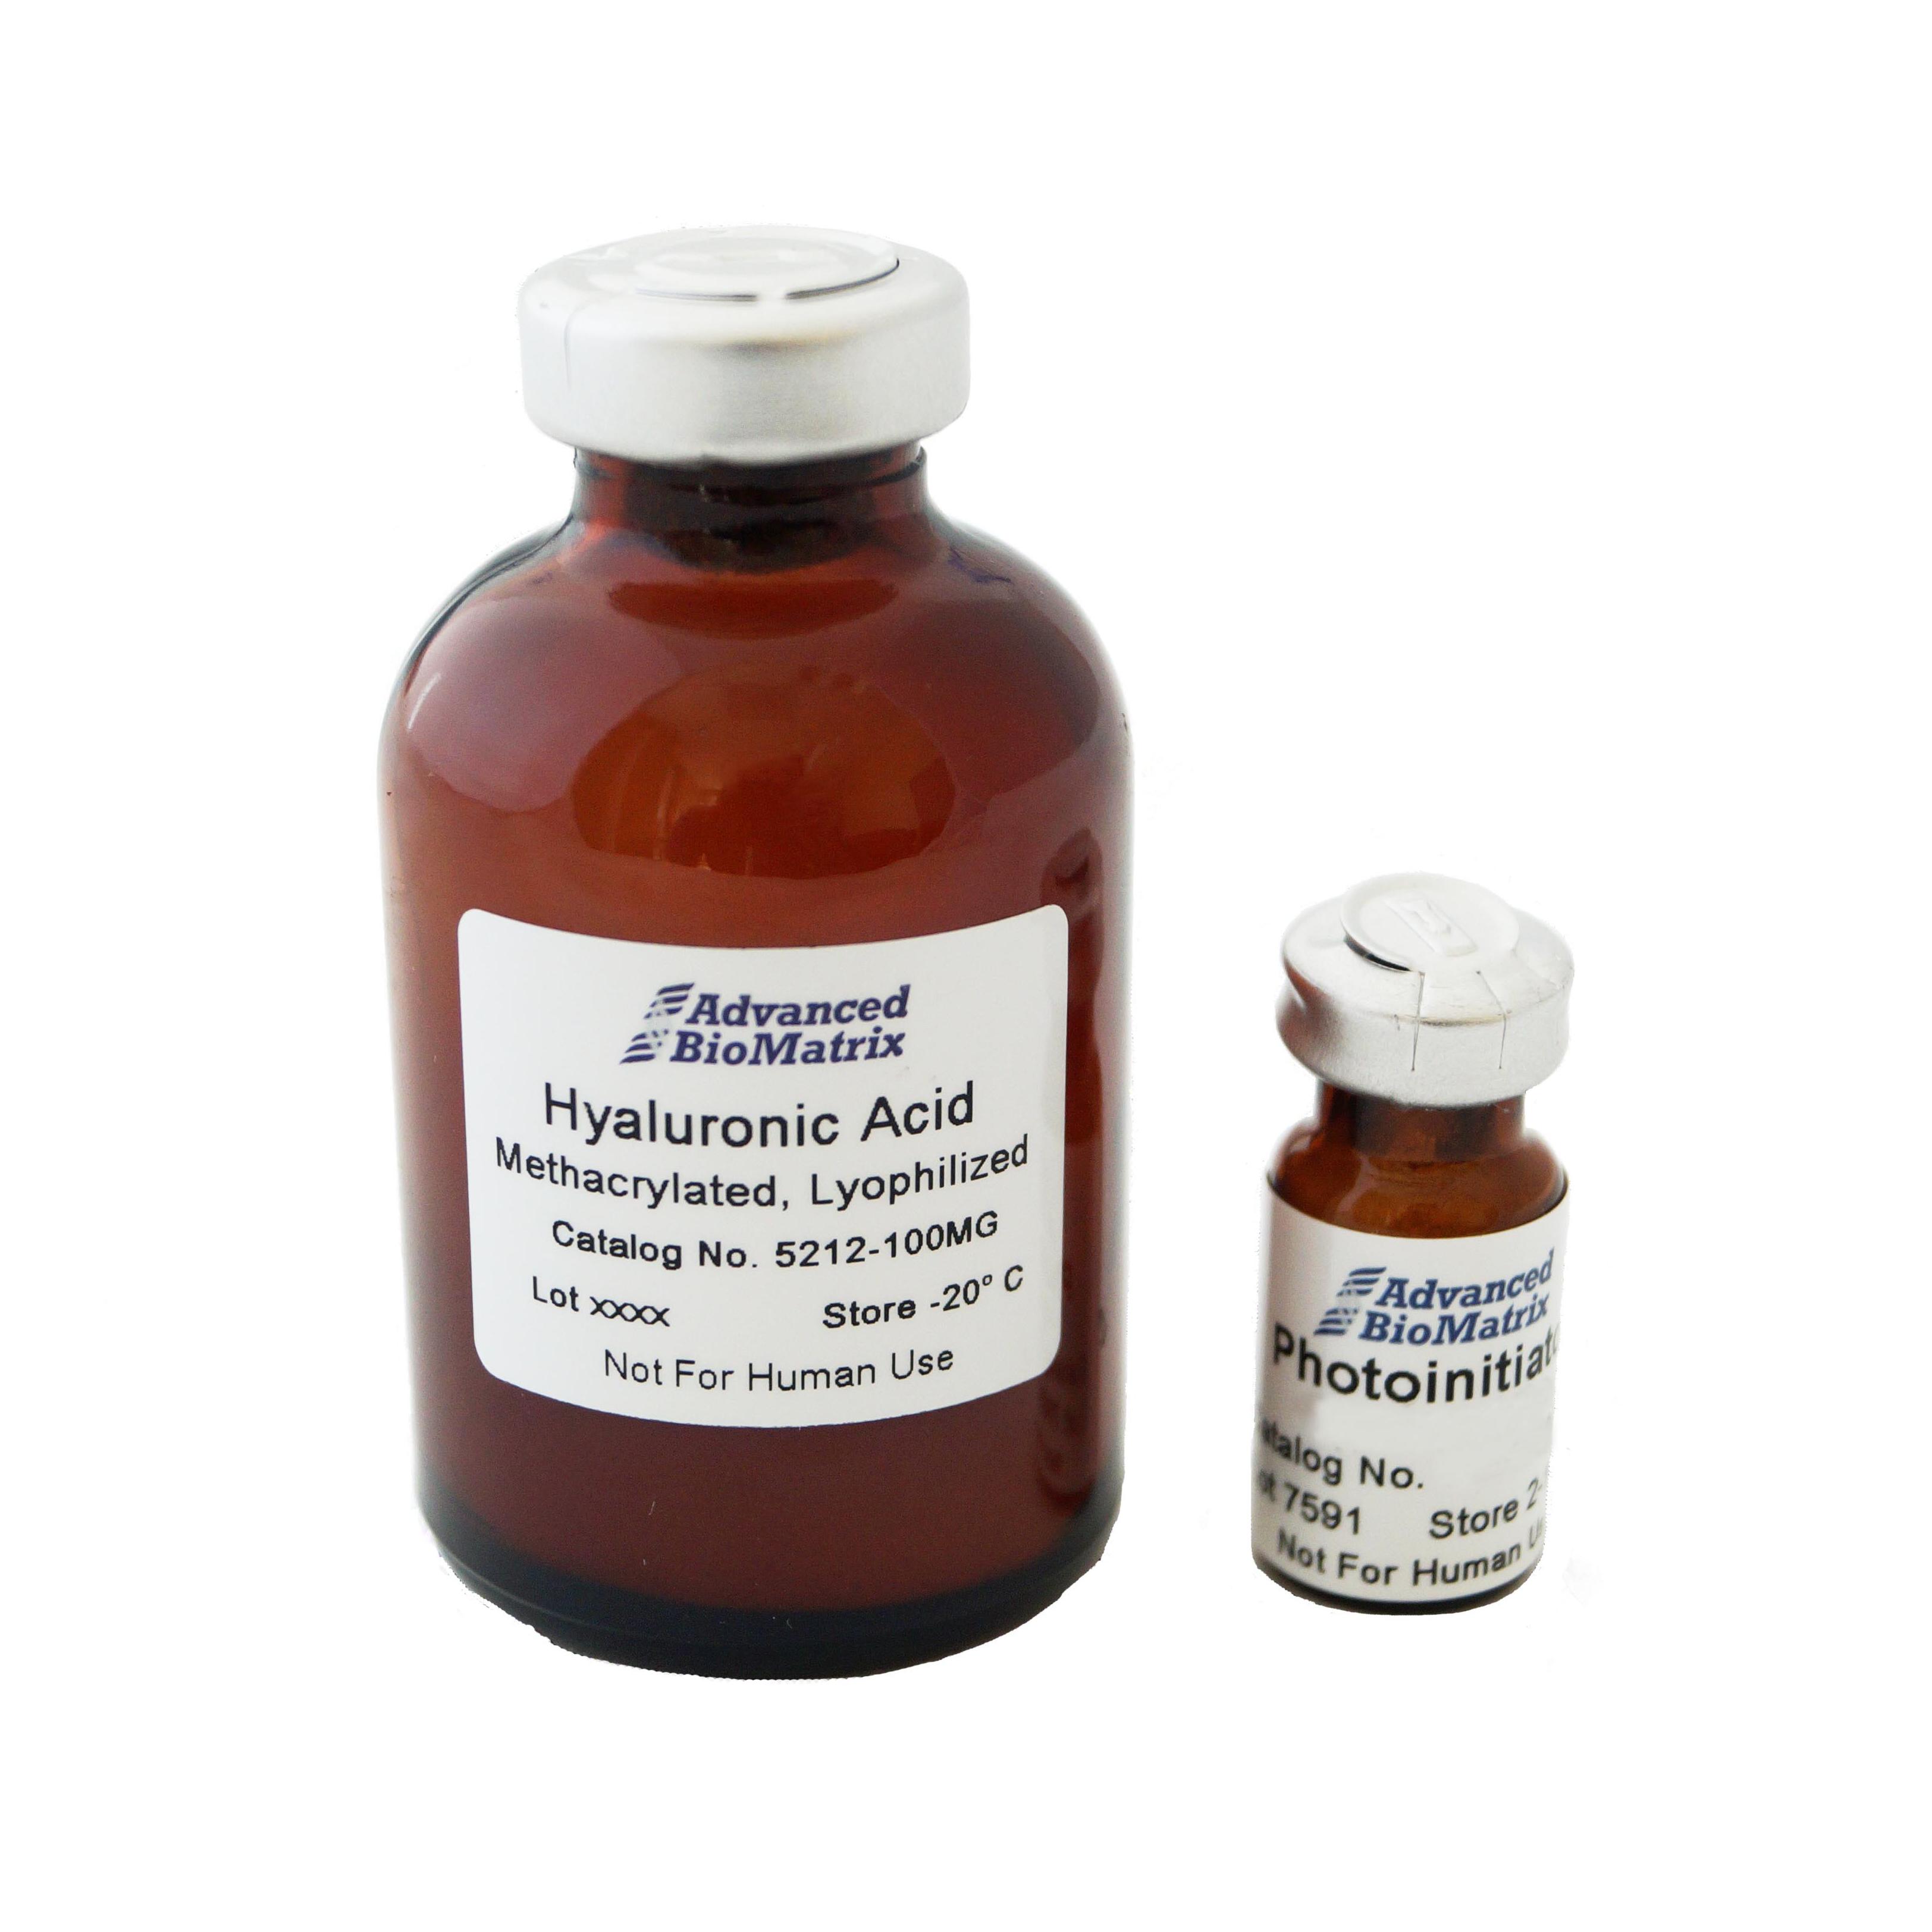 PhotoHA HAMA methacrylated hyaluronic acid from Advanced BioMatrix